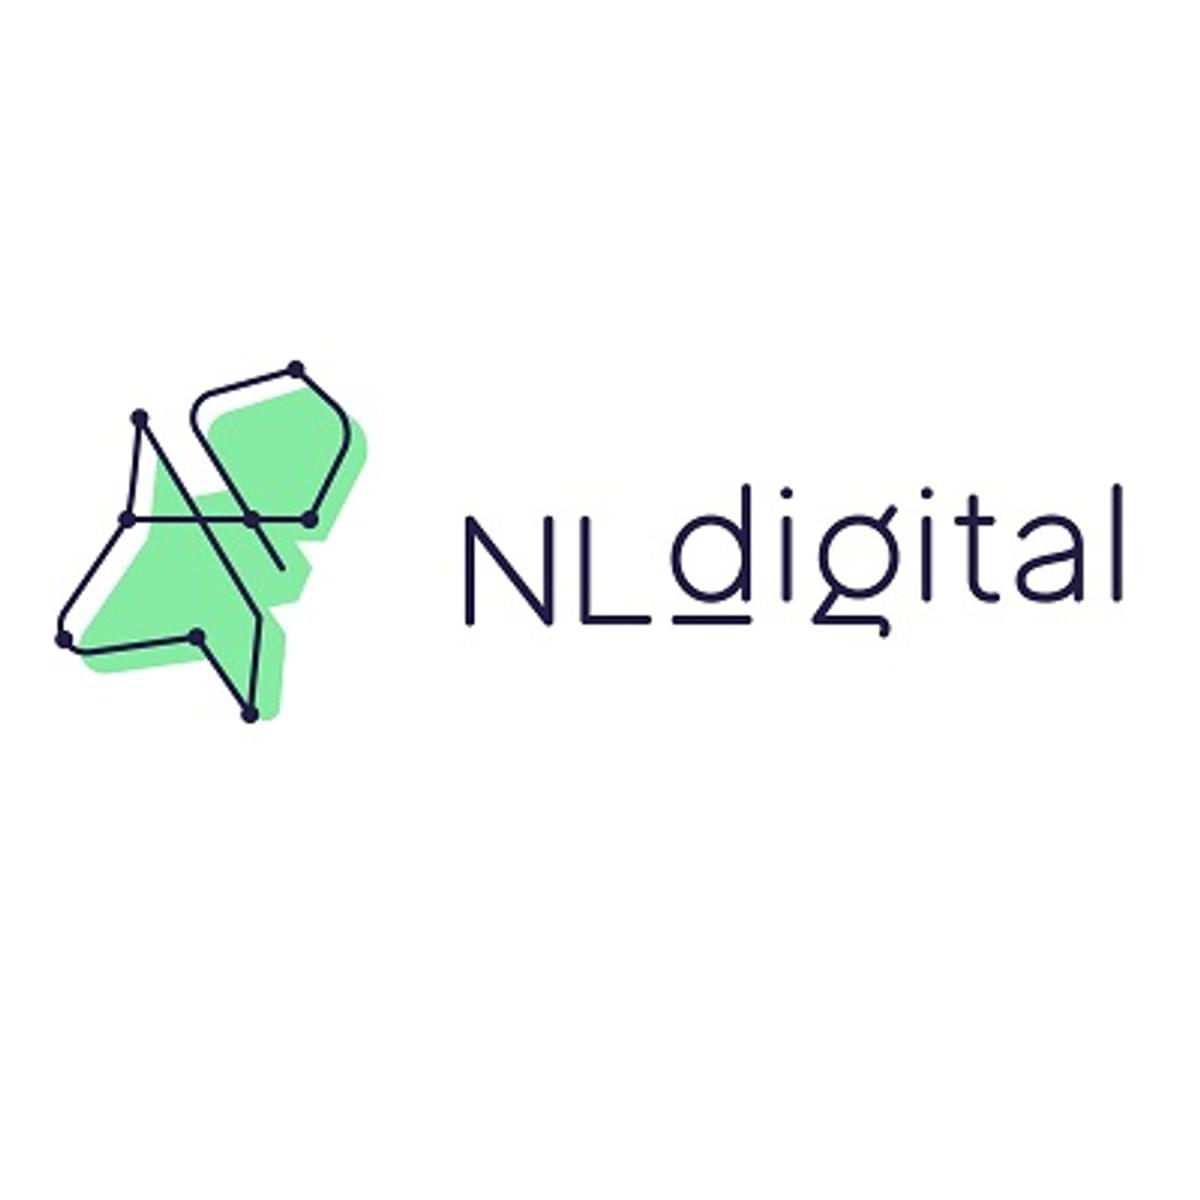 NLdigital lanceert nieuwe standaard algemene voorwaarden image